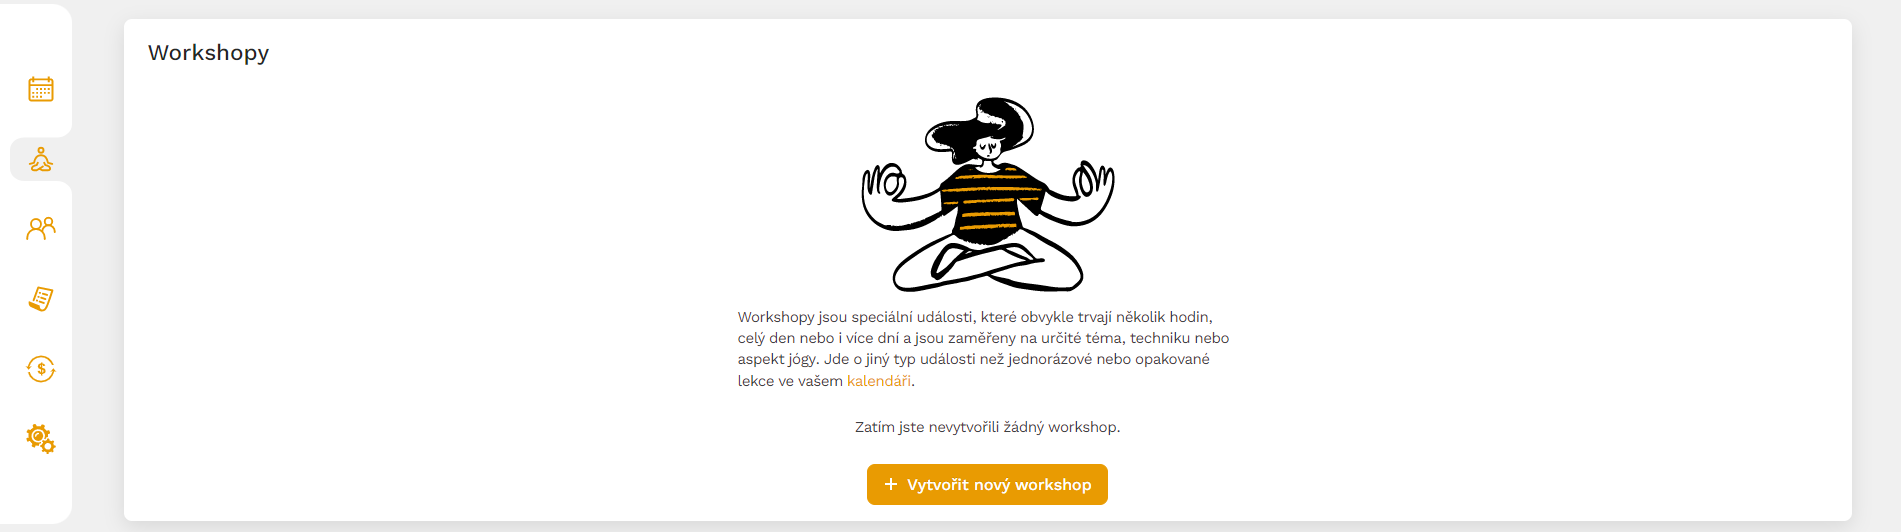 obrazovka pro vytváření workshopů a jejich přehled